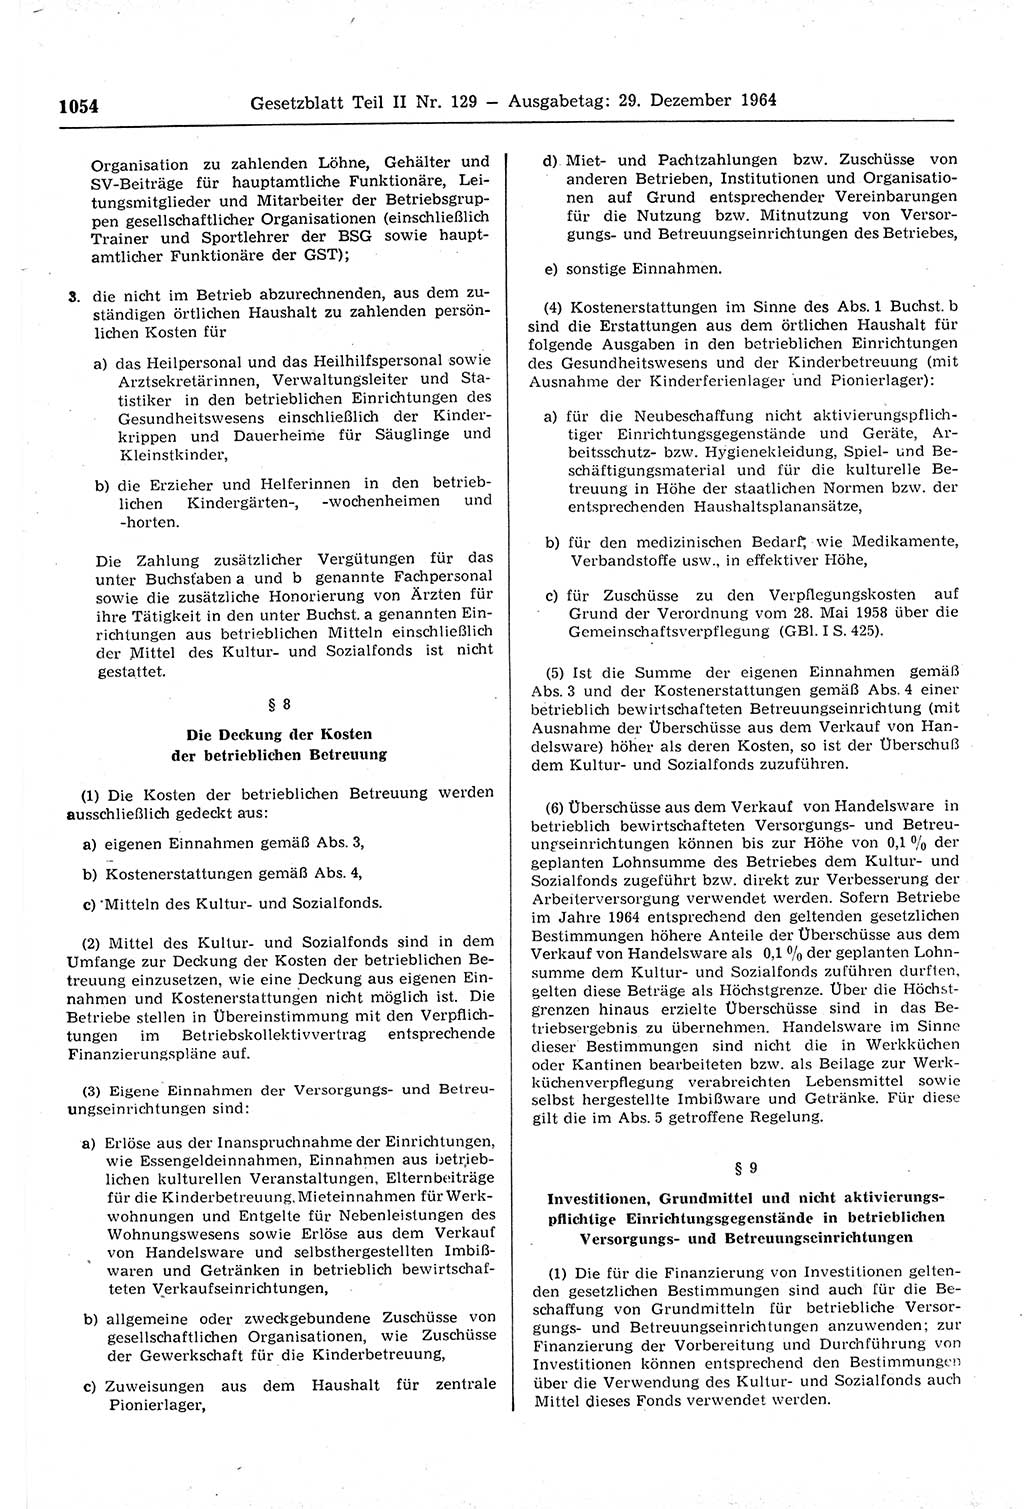 Gesetzblatt (GBl.) der Deutschen Demokratischen Republik (DDR) Teil ⅠⅠ 1964, Seite 1054 (GBl. DDR ⅠⅠ 1964, S. 1054)